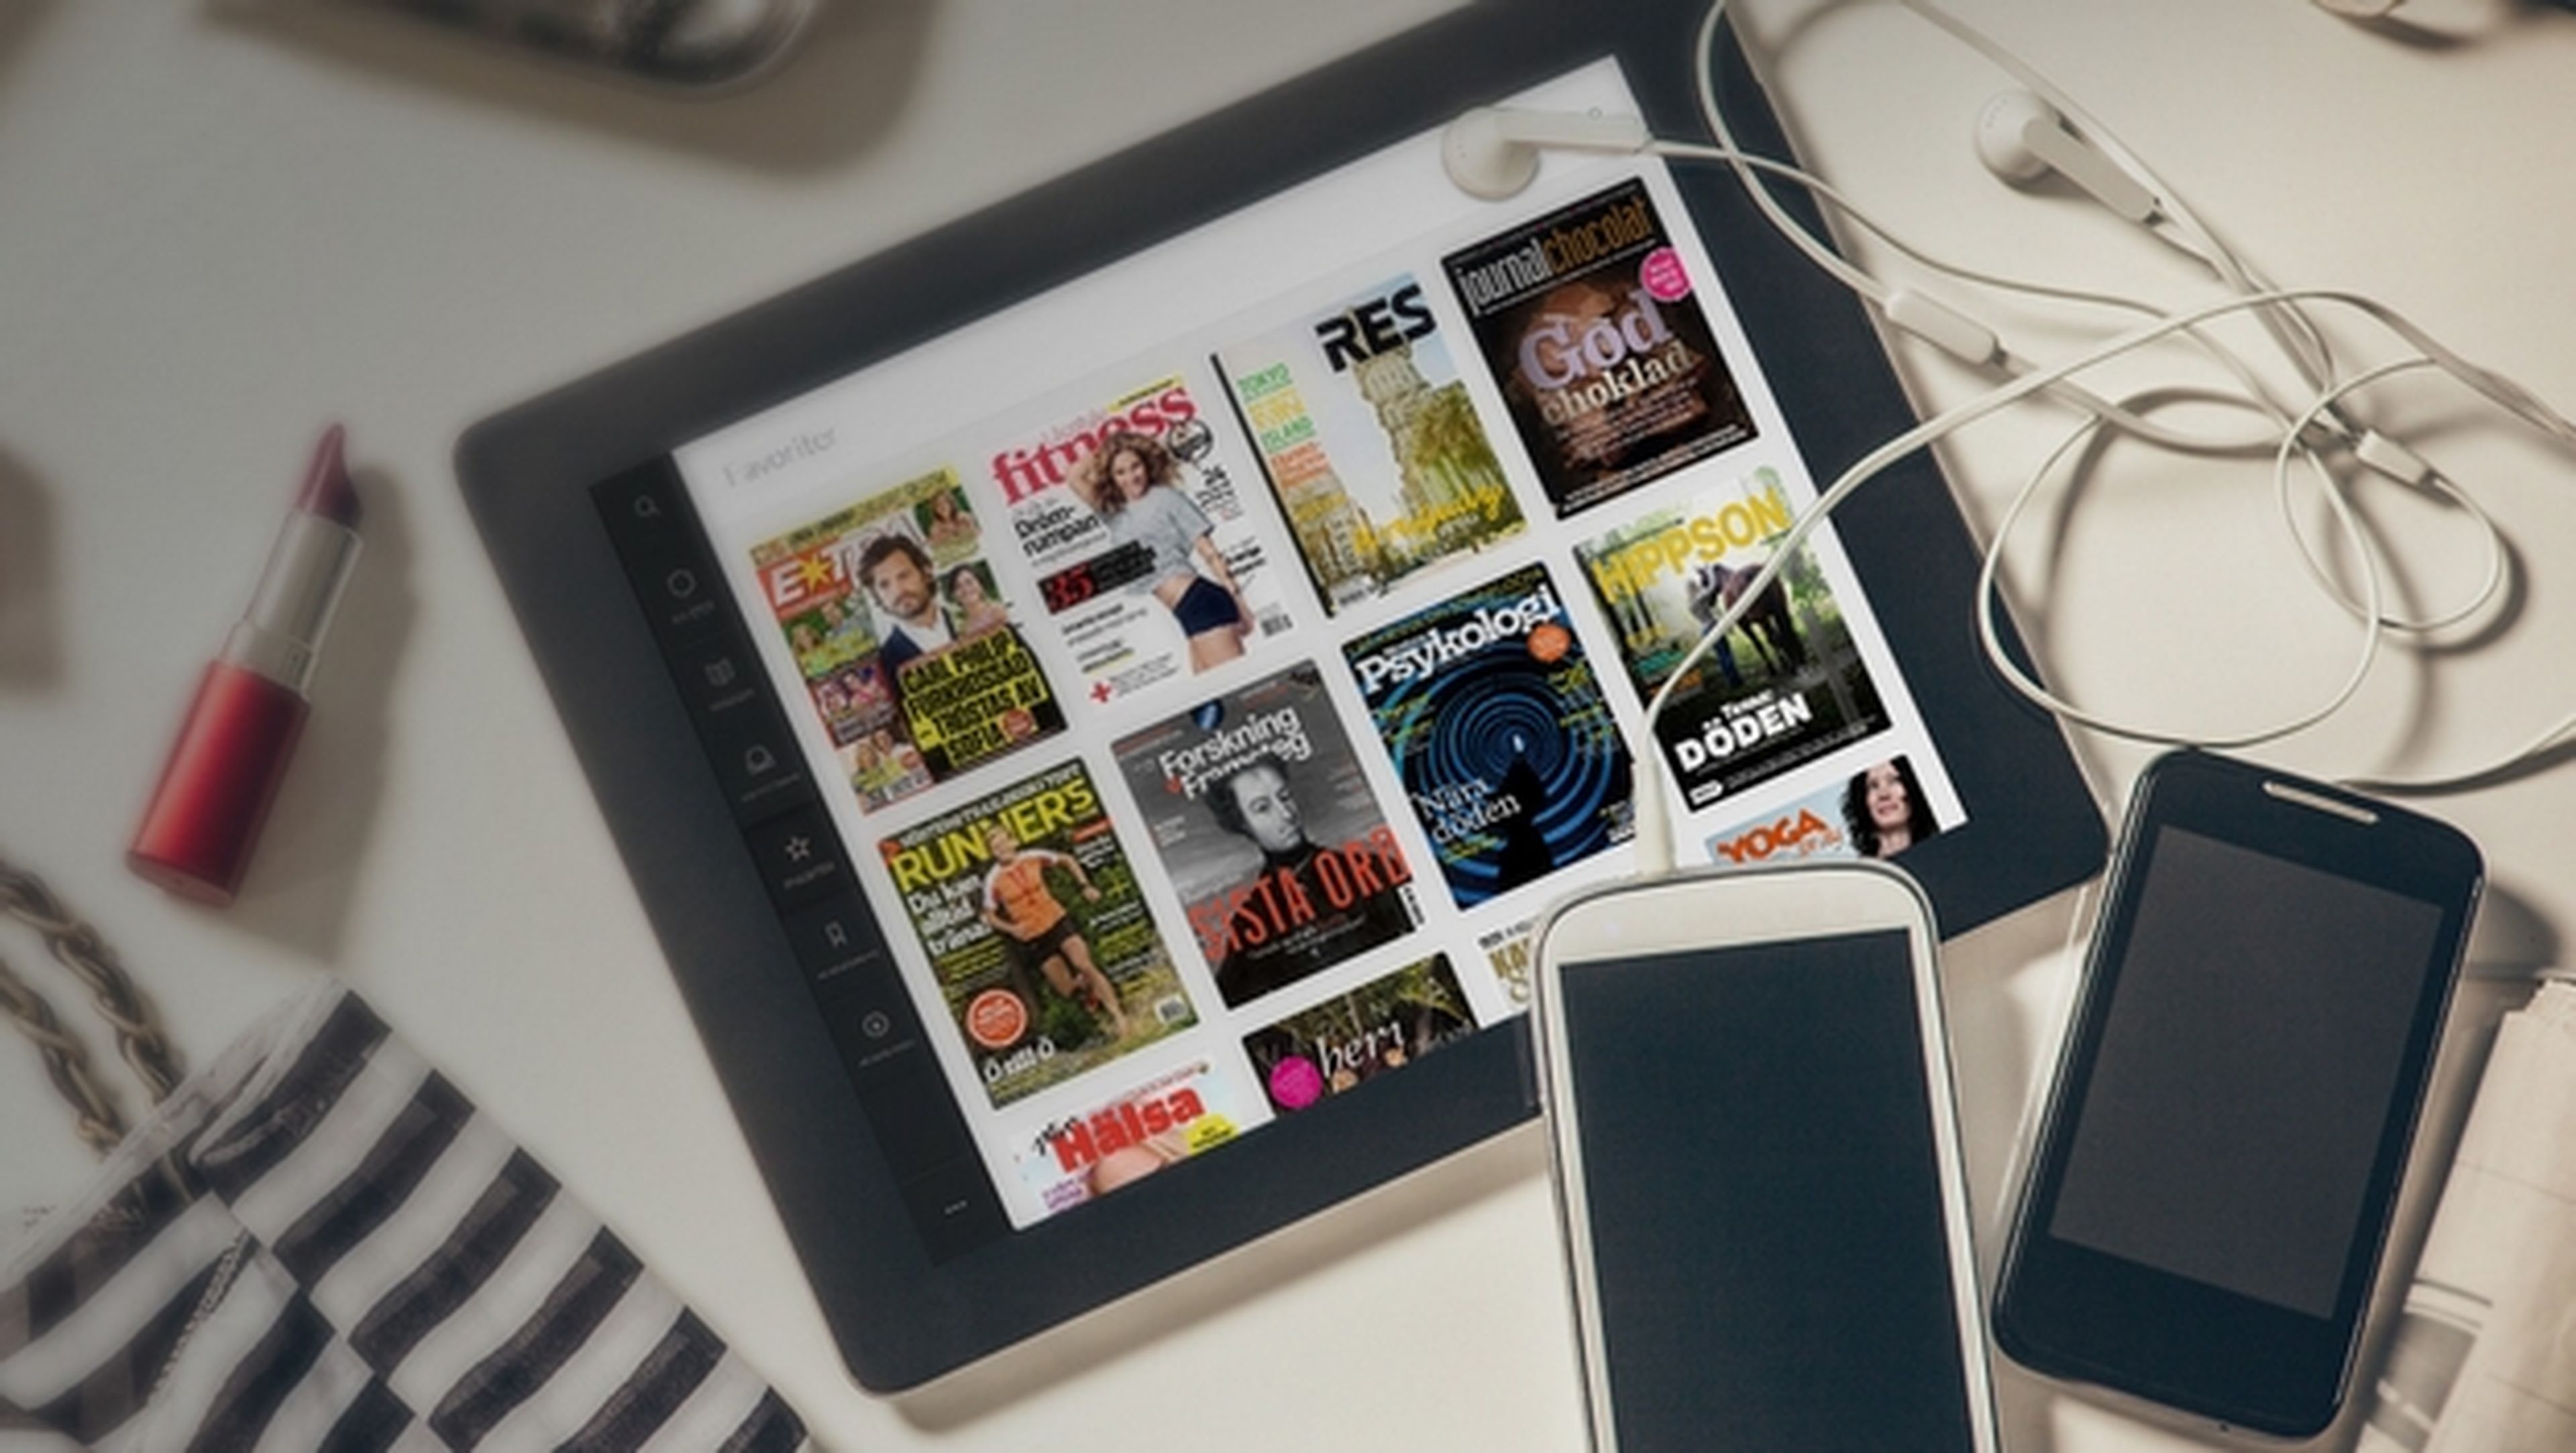 Zstory, se estrena en España el Spotify de las revistas digitales, mediante cuota mensual de suscripción